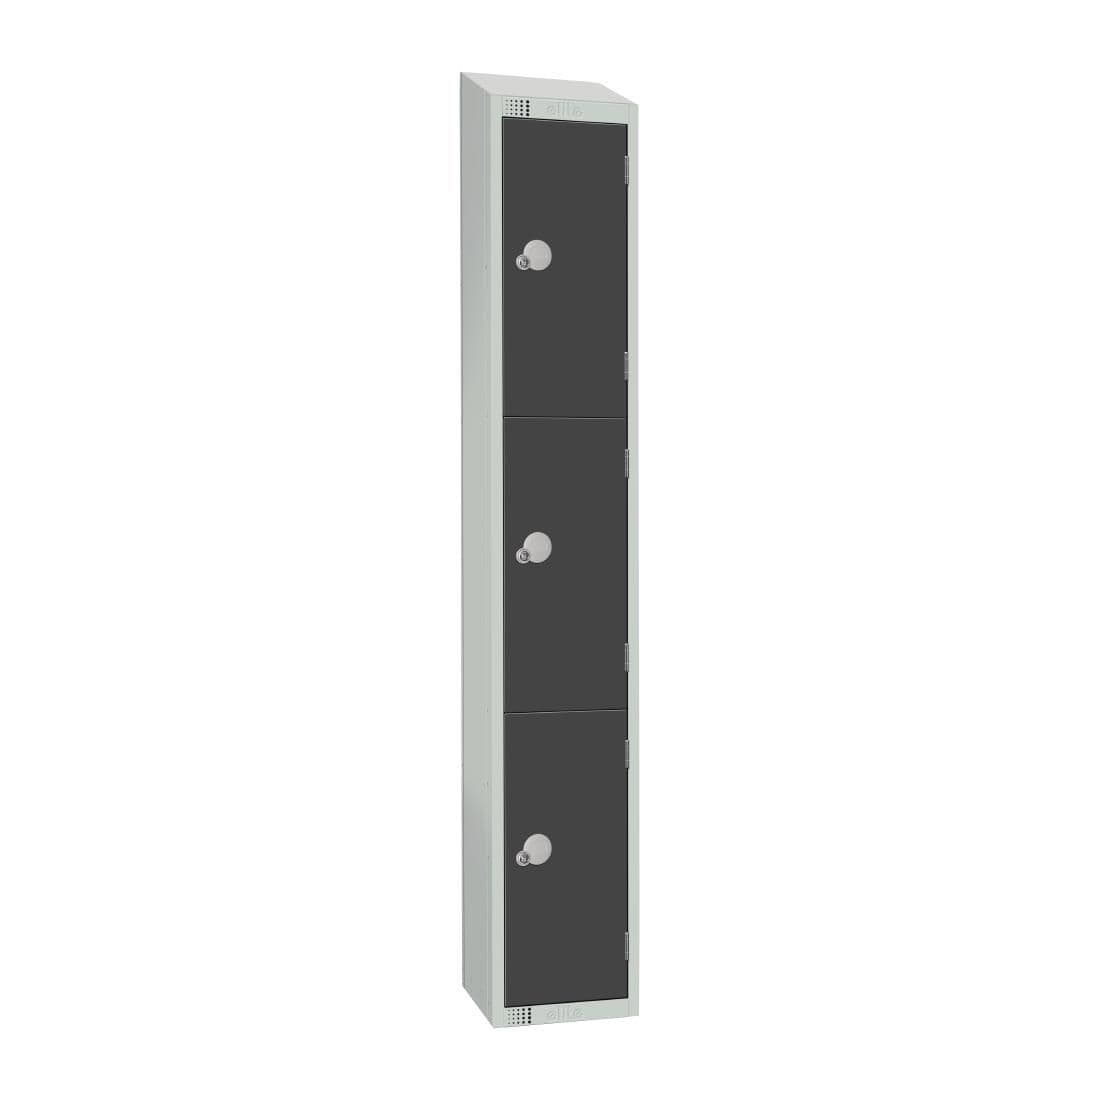 GR679-CLS Elite Three Door Manual Combination Locker Locker Graphite Grey JD Catering Equipment Solutions Ltd